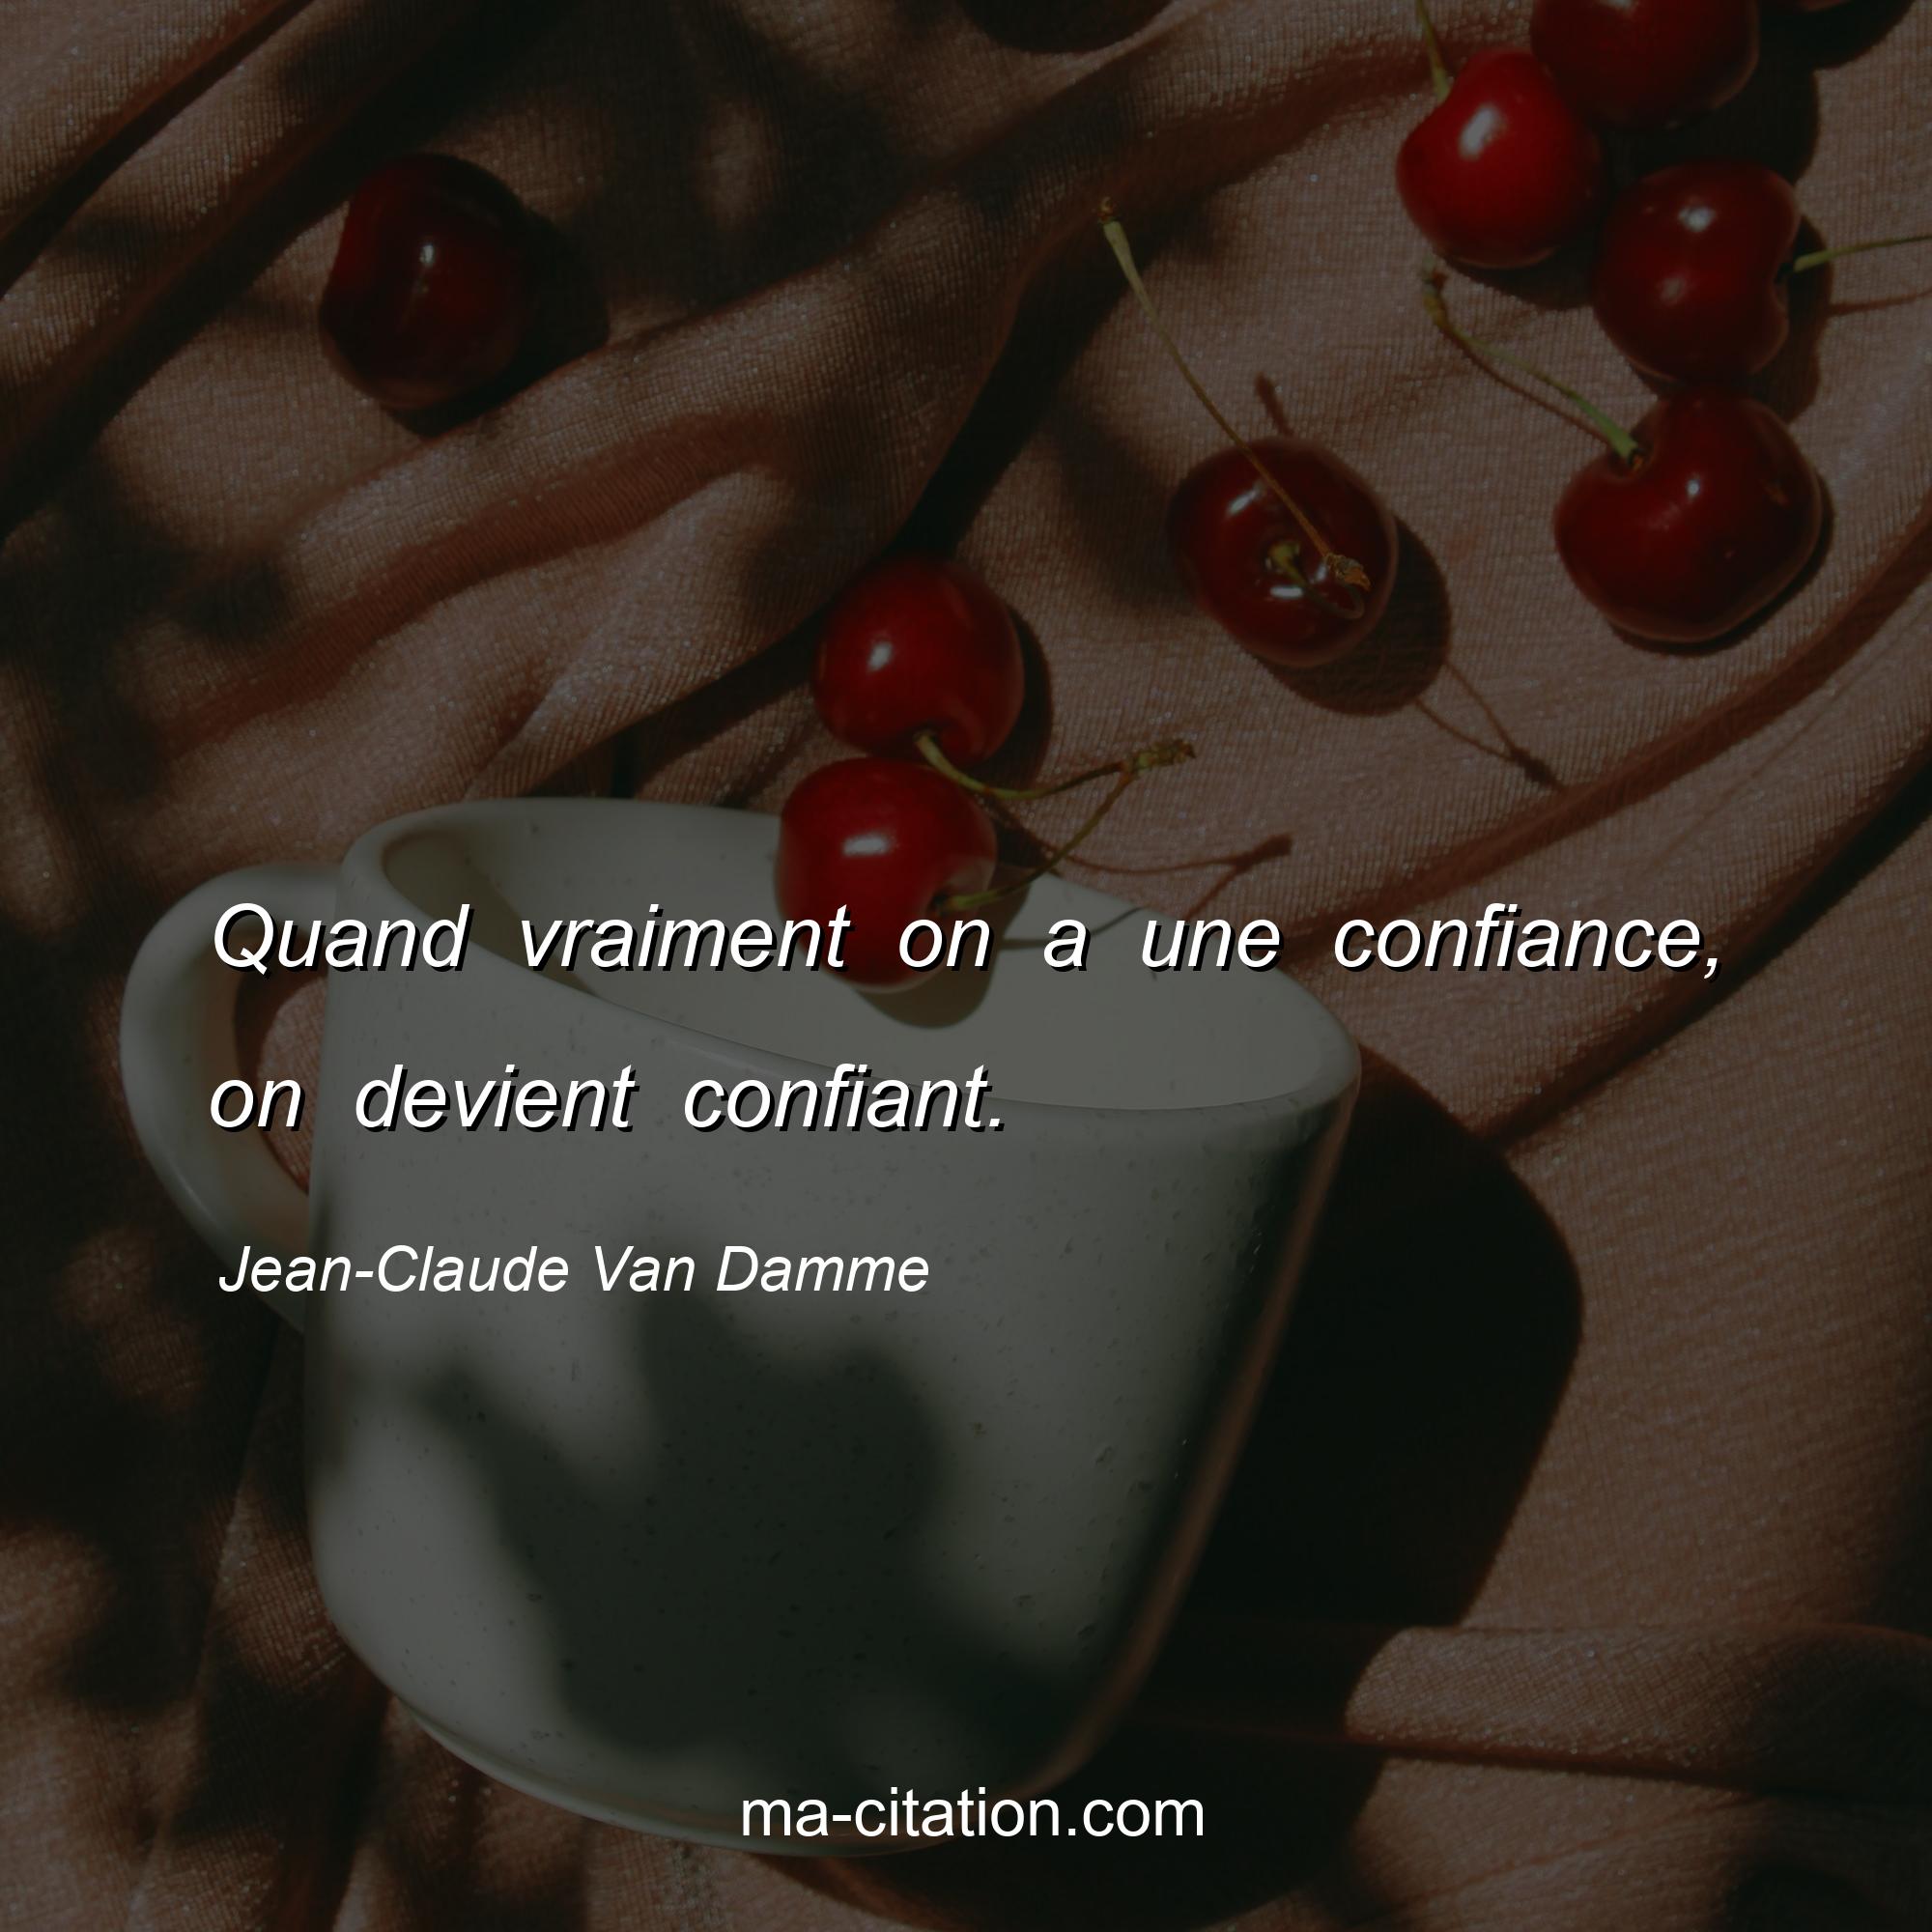 Jean-Claude Van Damme : Quand vraiment on a une confiance, on devient confiant.